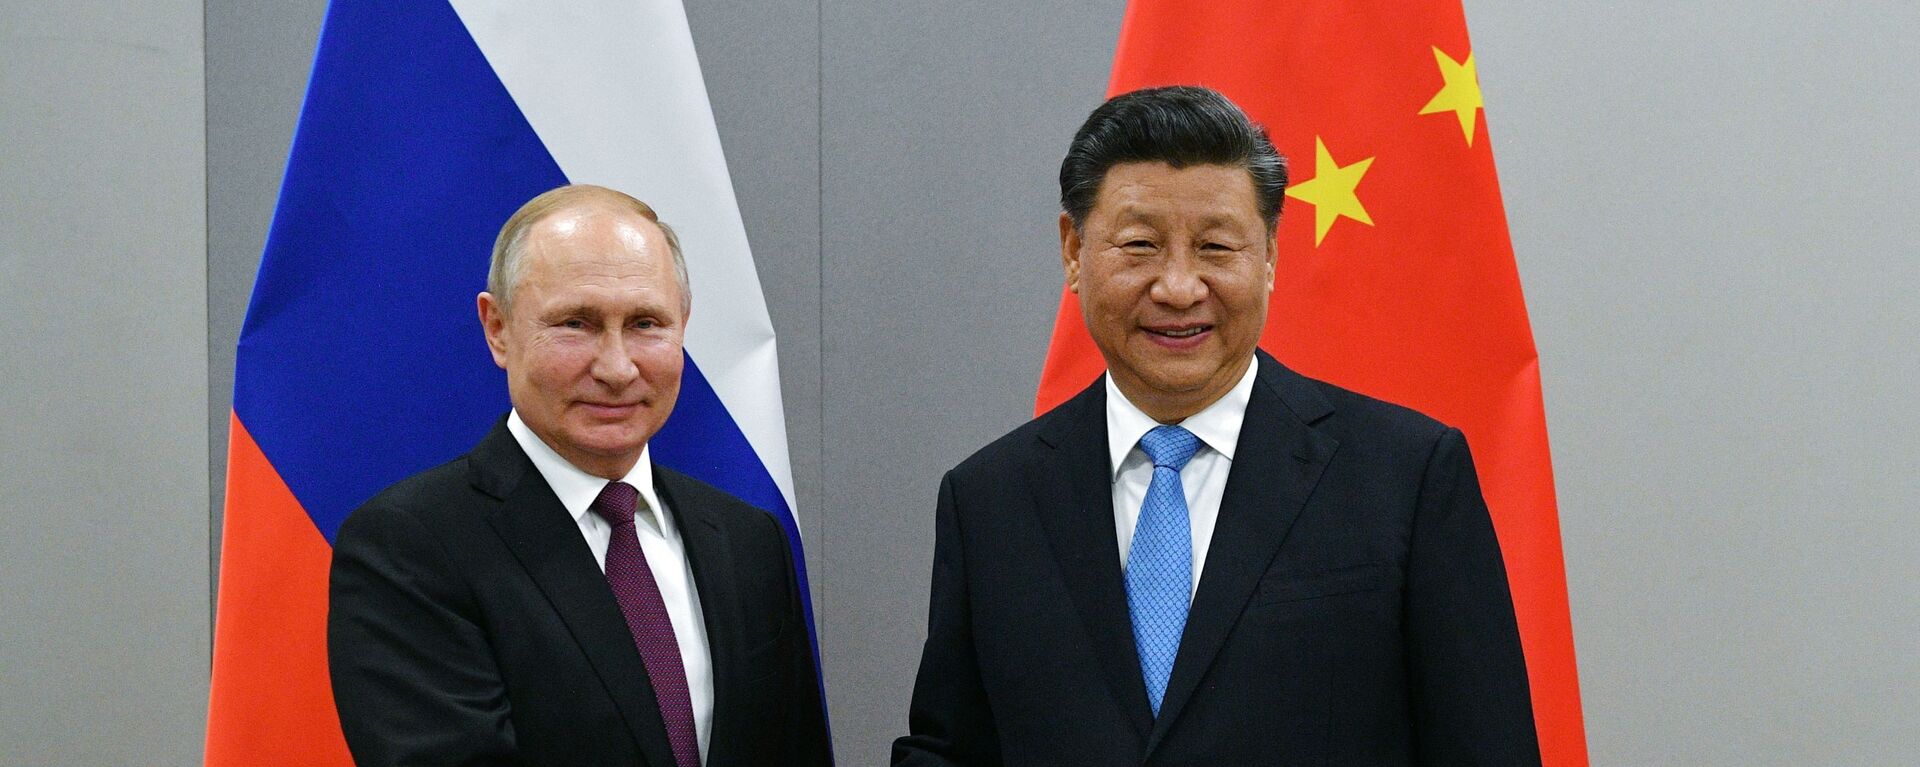 Predsednici Rusije i Kine, Vladimir Putin i Si Đingping - Sputnik Srbija, 1920, 04.12.2021